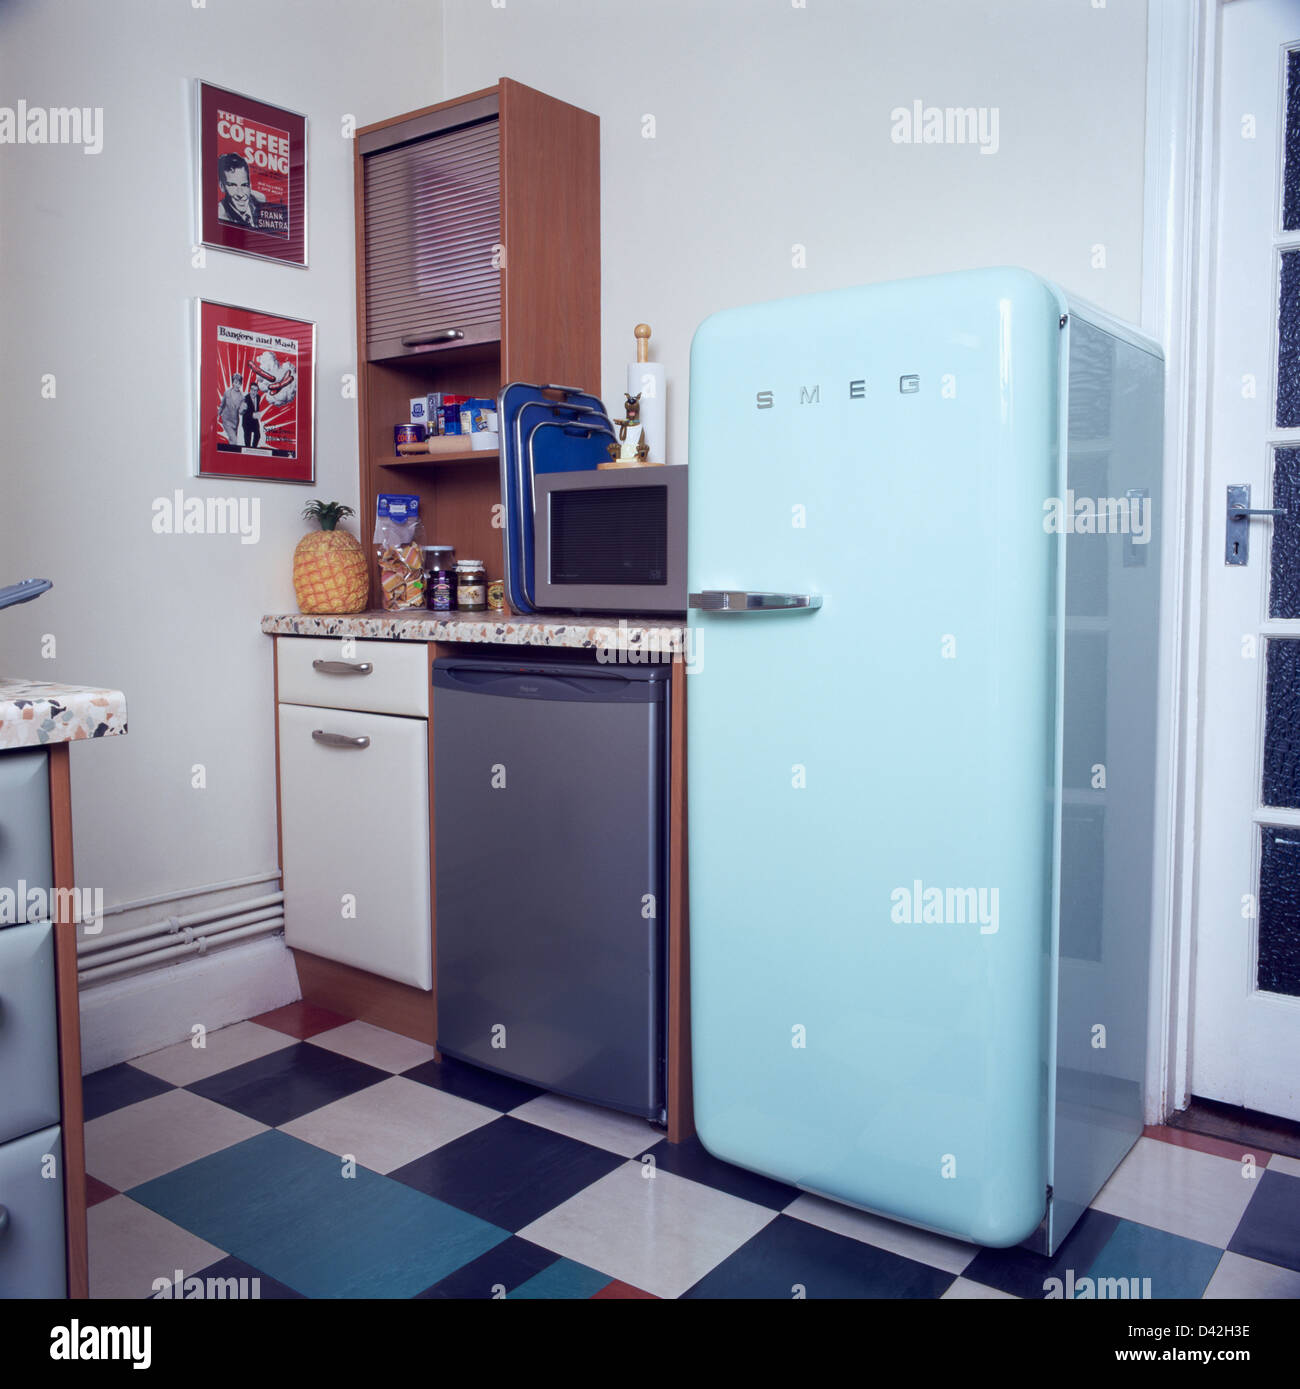 Smeg réfrigérateur Banque de photographies et d'images à haute résolution -  Alamy